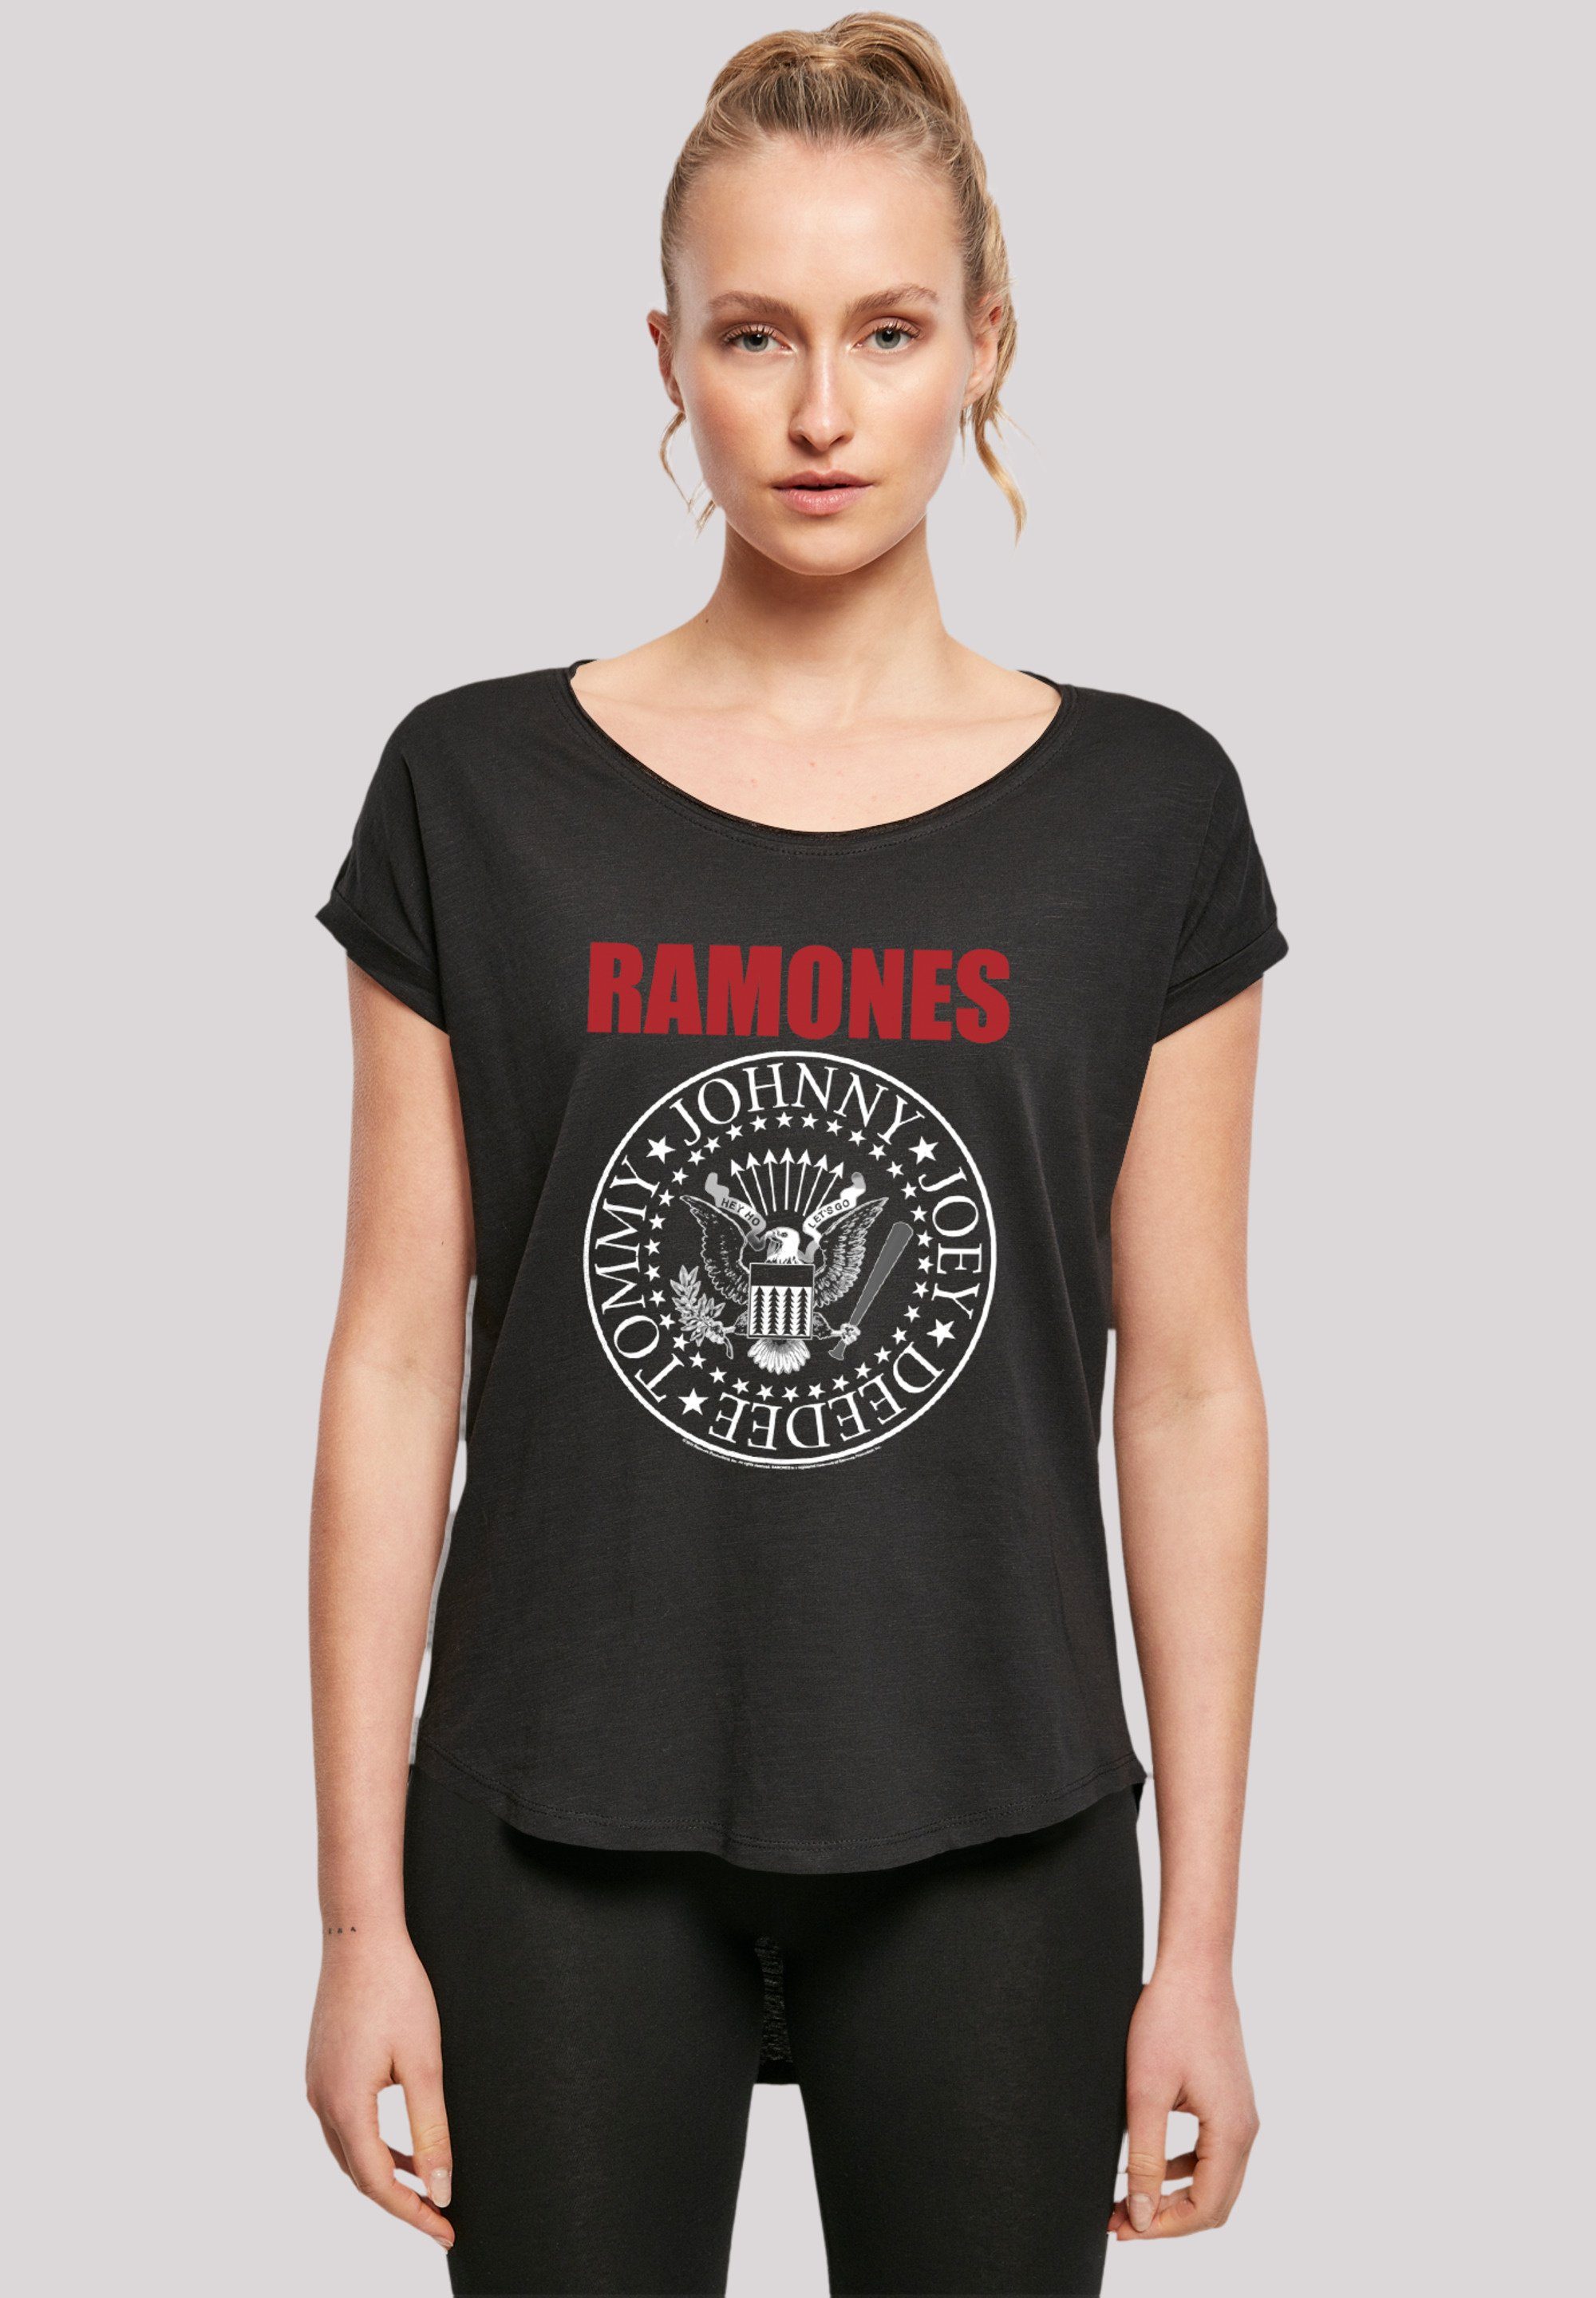 Damen extra Red geschnittenes Hinten Ramones Rock Musik Rock-Musik, Qualität, Band, lang Seal Premium F4NT4STIC T-Shirt Band T-Shirt Text